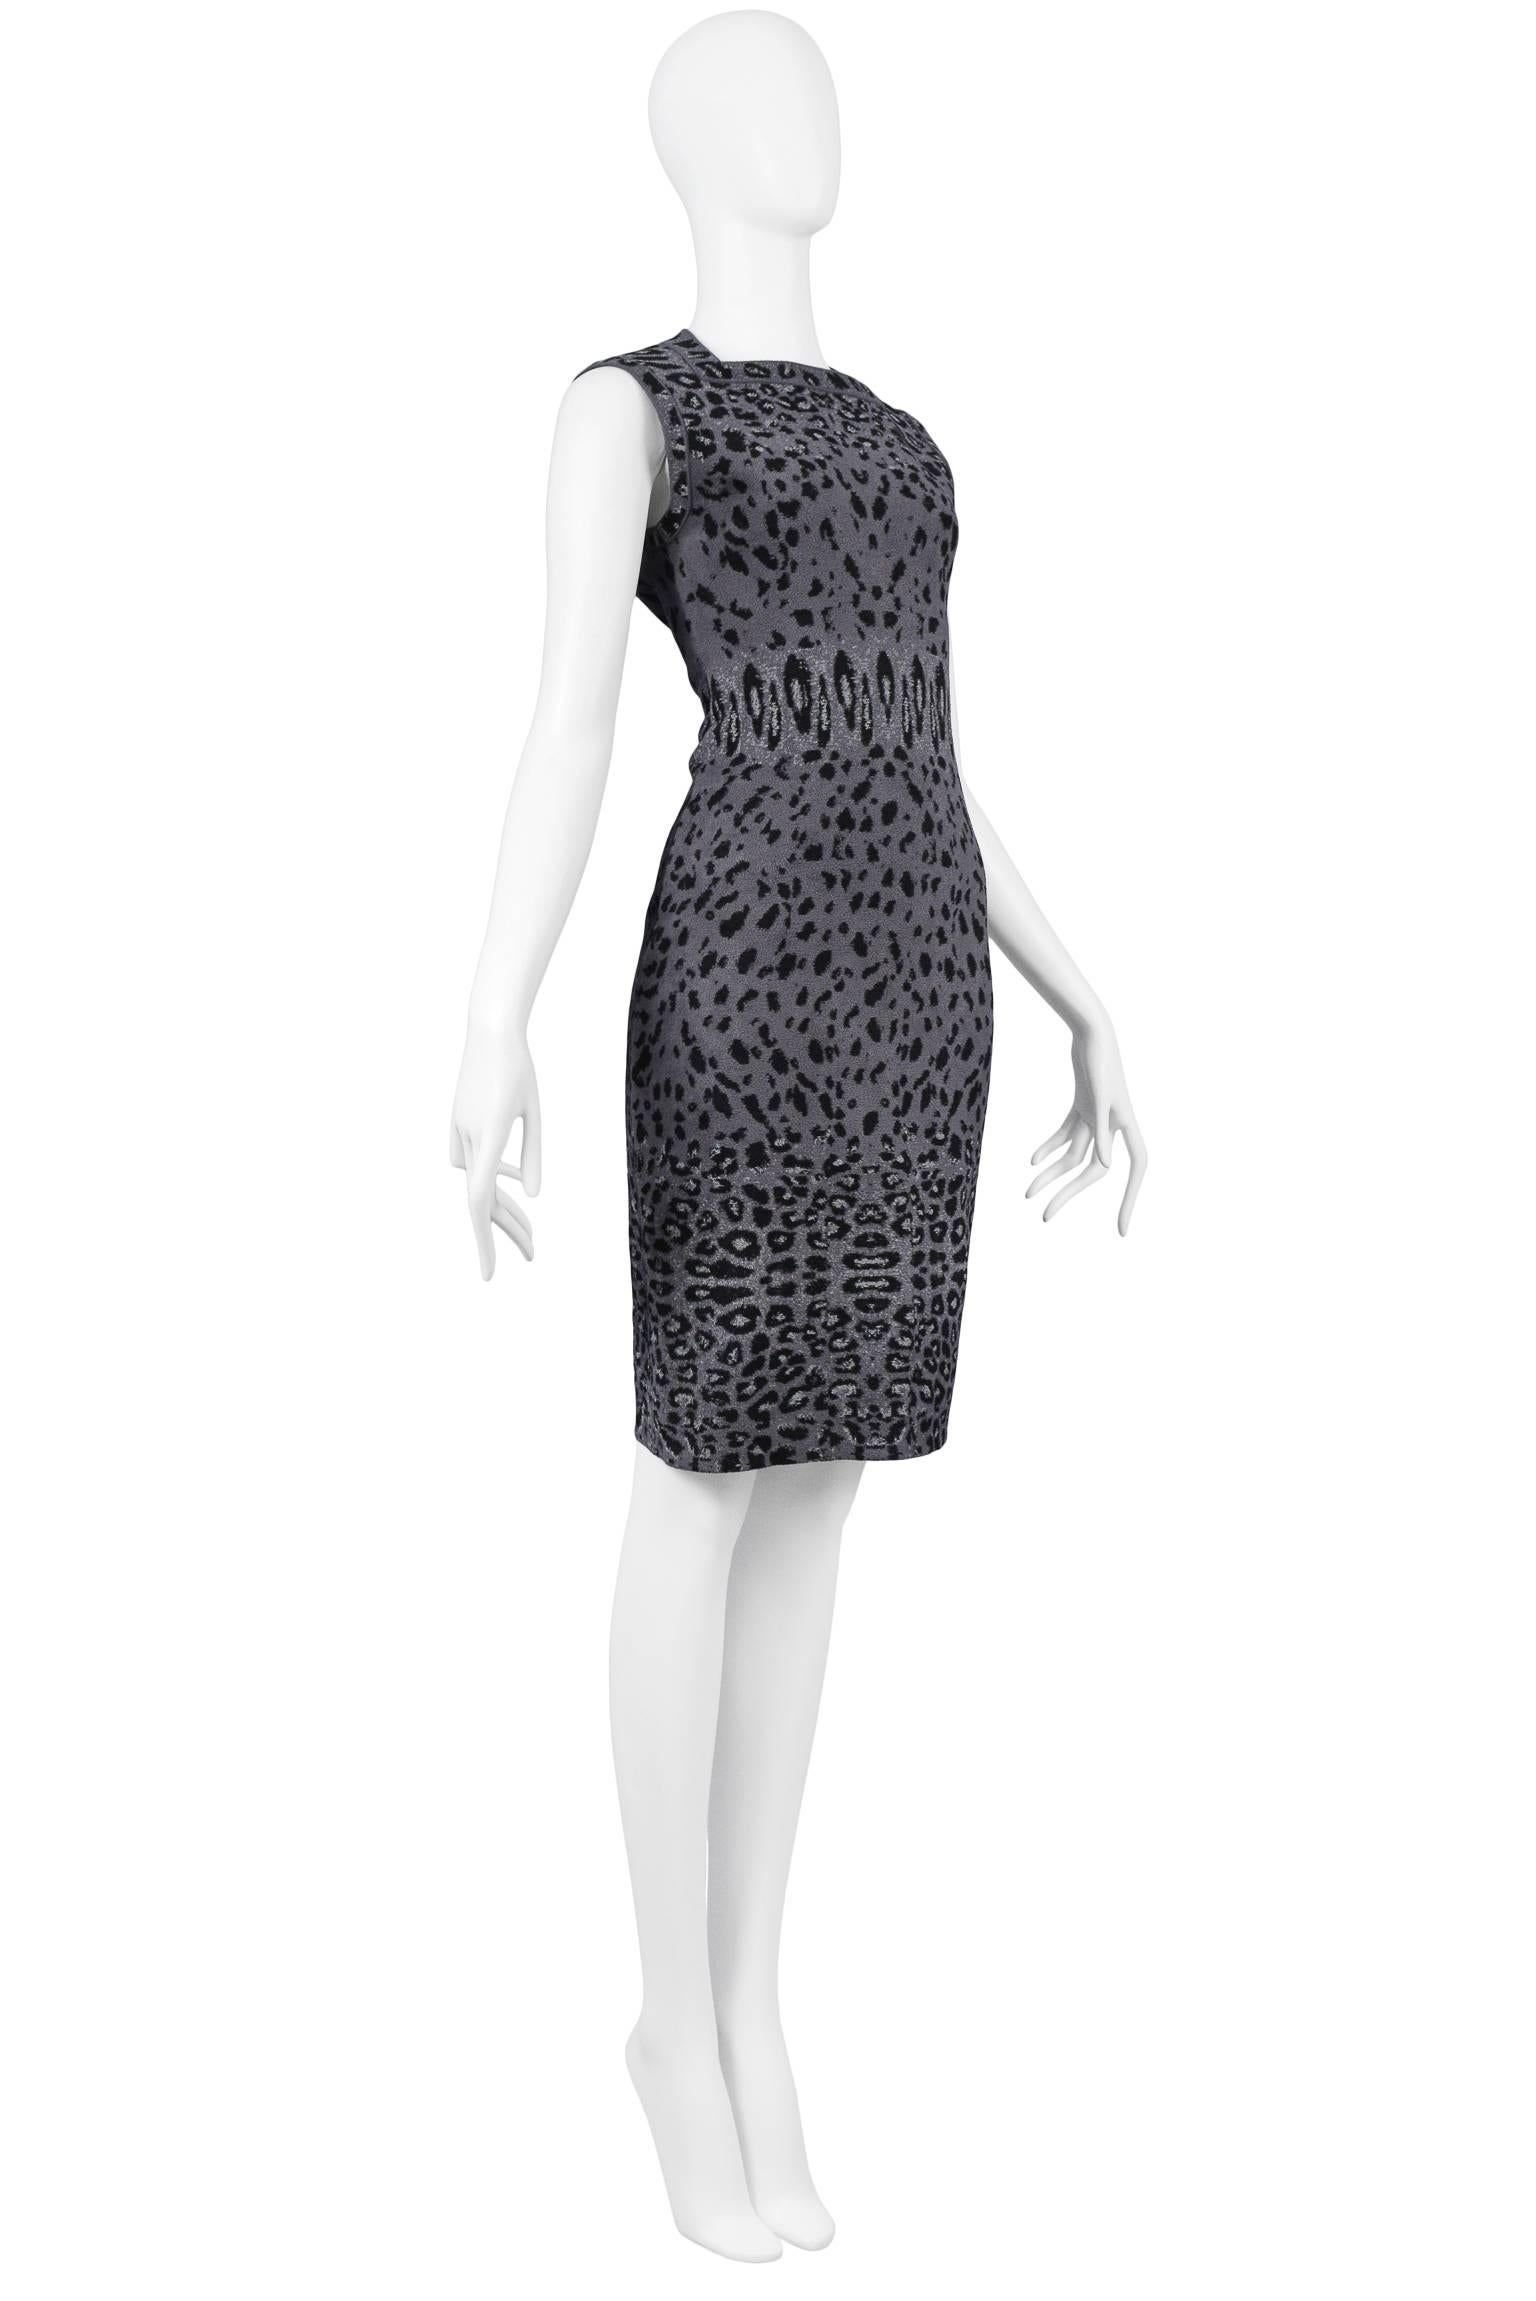 Women's Iconic Azzedine Alaia Grey Leopard Bodycon Dress 2011